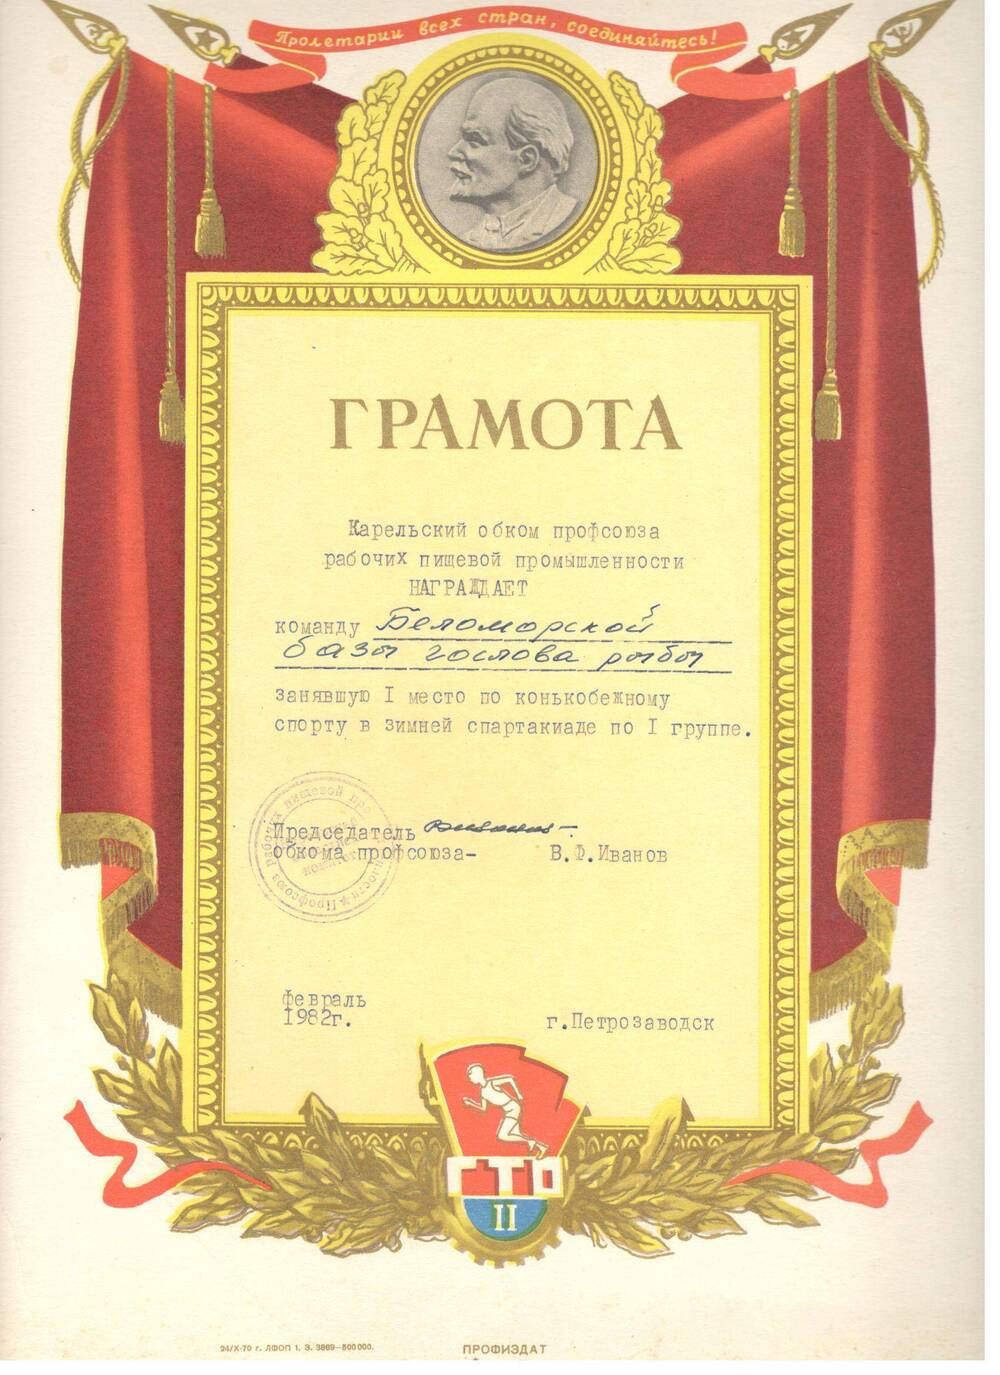 Грамота. Награждена Беломорская База ГосЛова рыбы за 1-е место по конькобежному спорту, 1982 г.